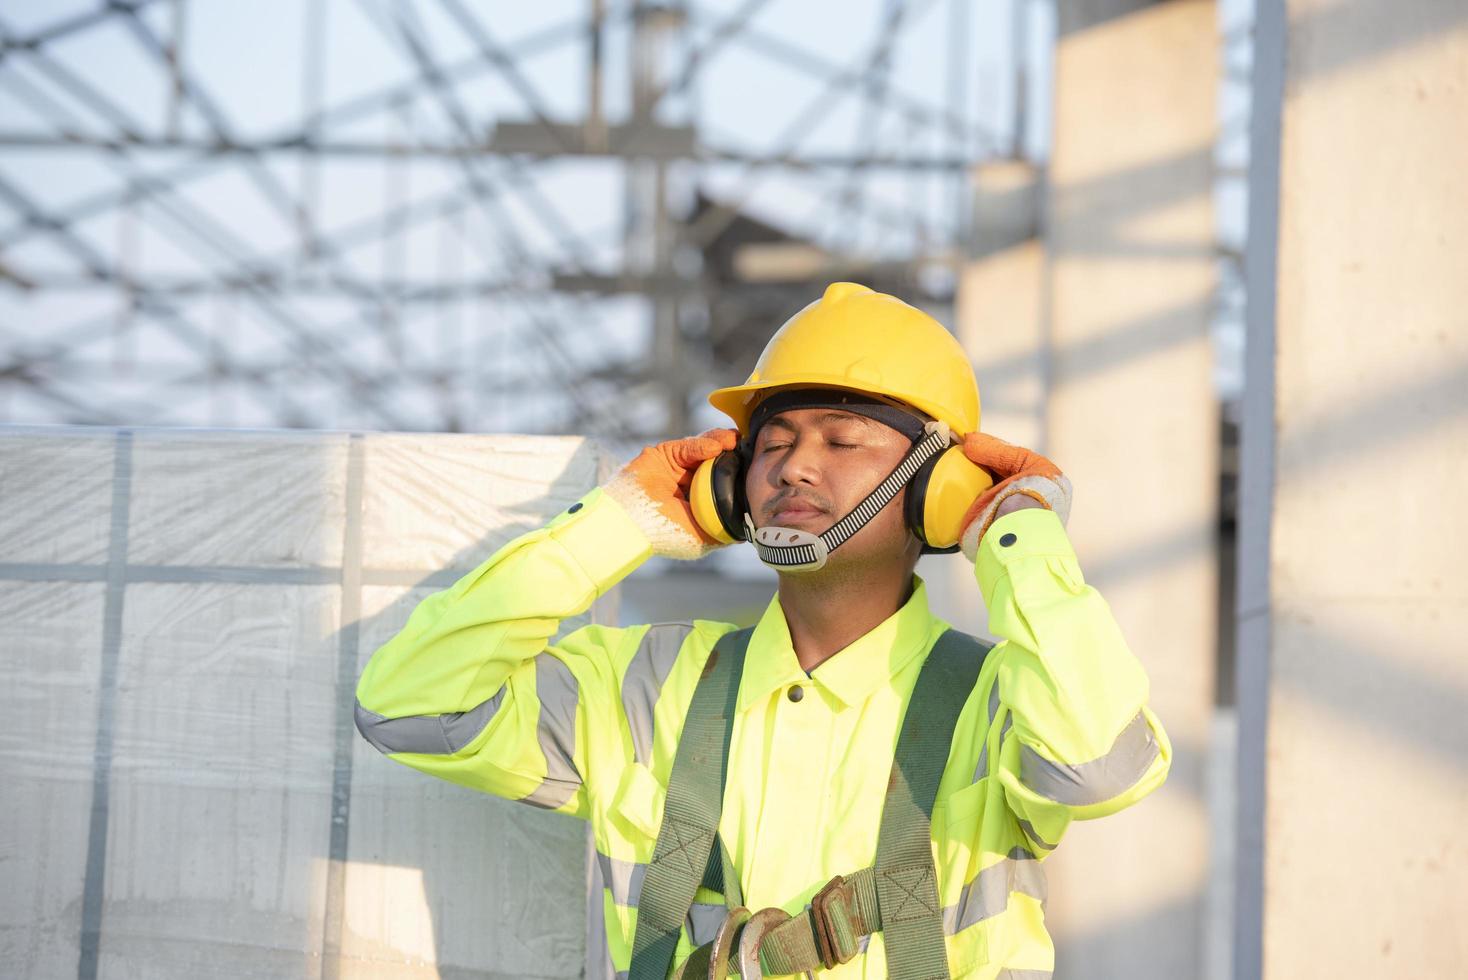 Aziatische ingenieurs in veiligheidshelmen en veiligheidsvesten voor werknemers met beschermende koptelefoons op bouwplaatsen. foto